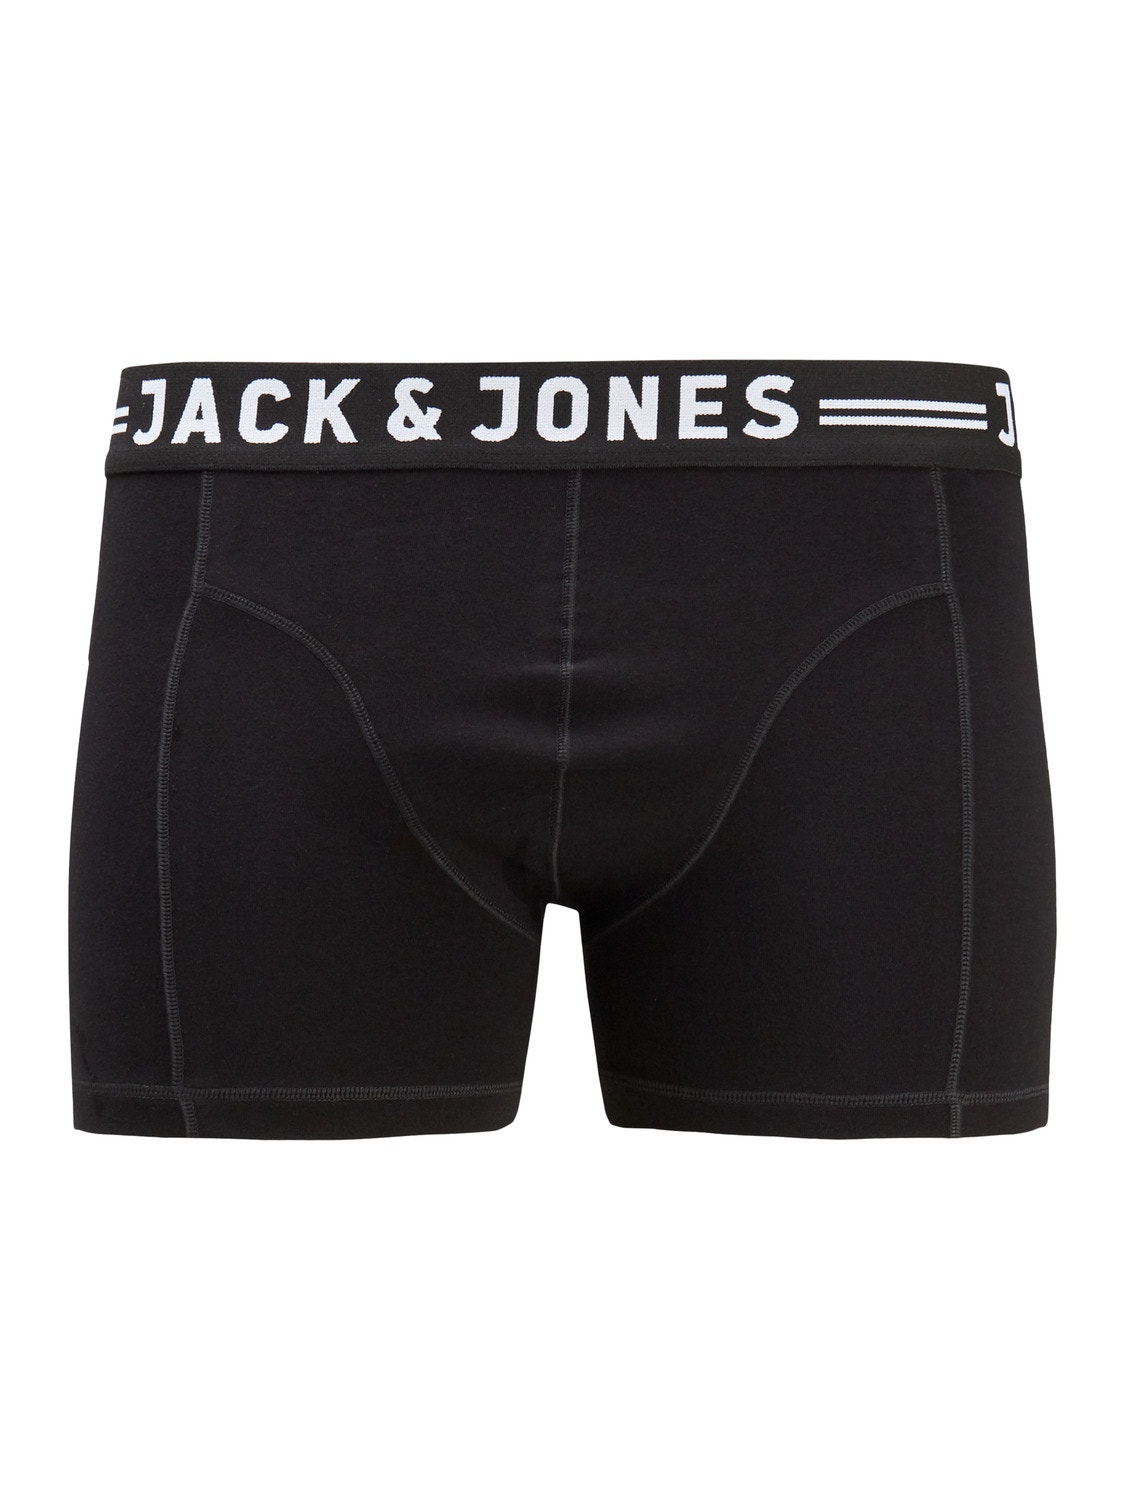 Jack & Jones Plus Size 3-pakuotės Trumpikės -Black - 12147591